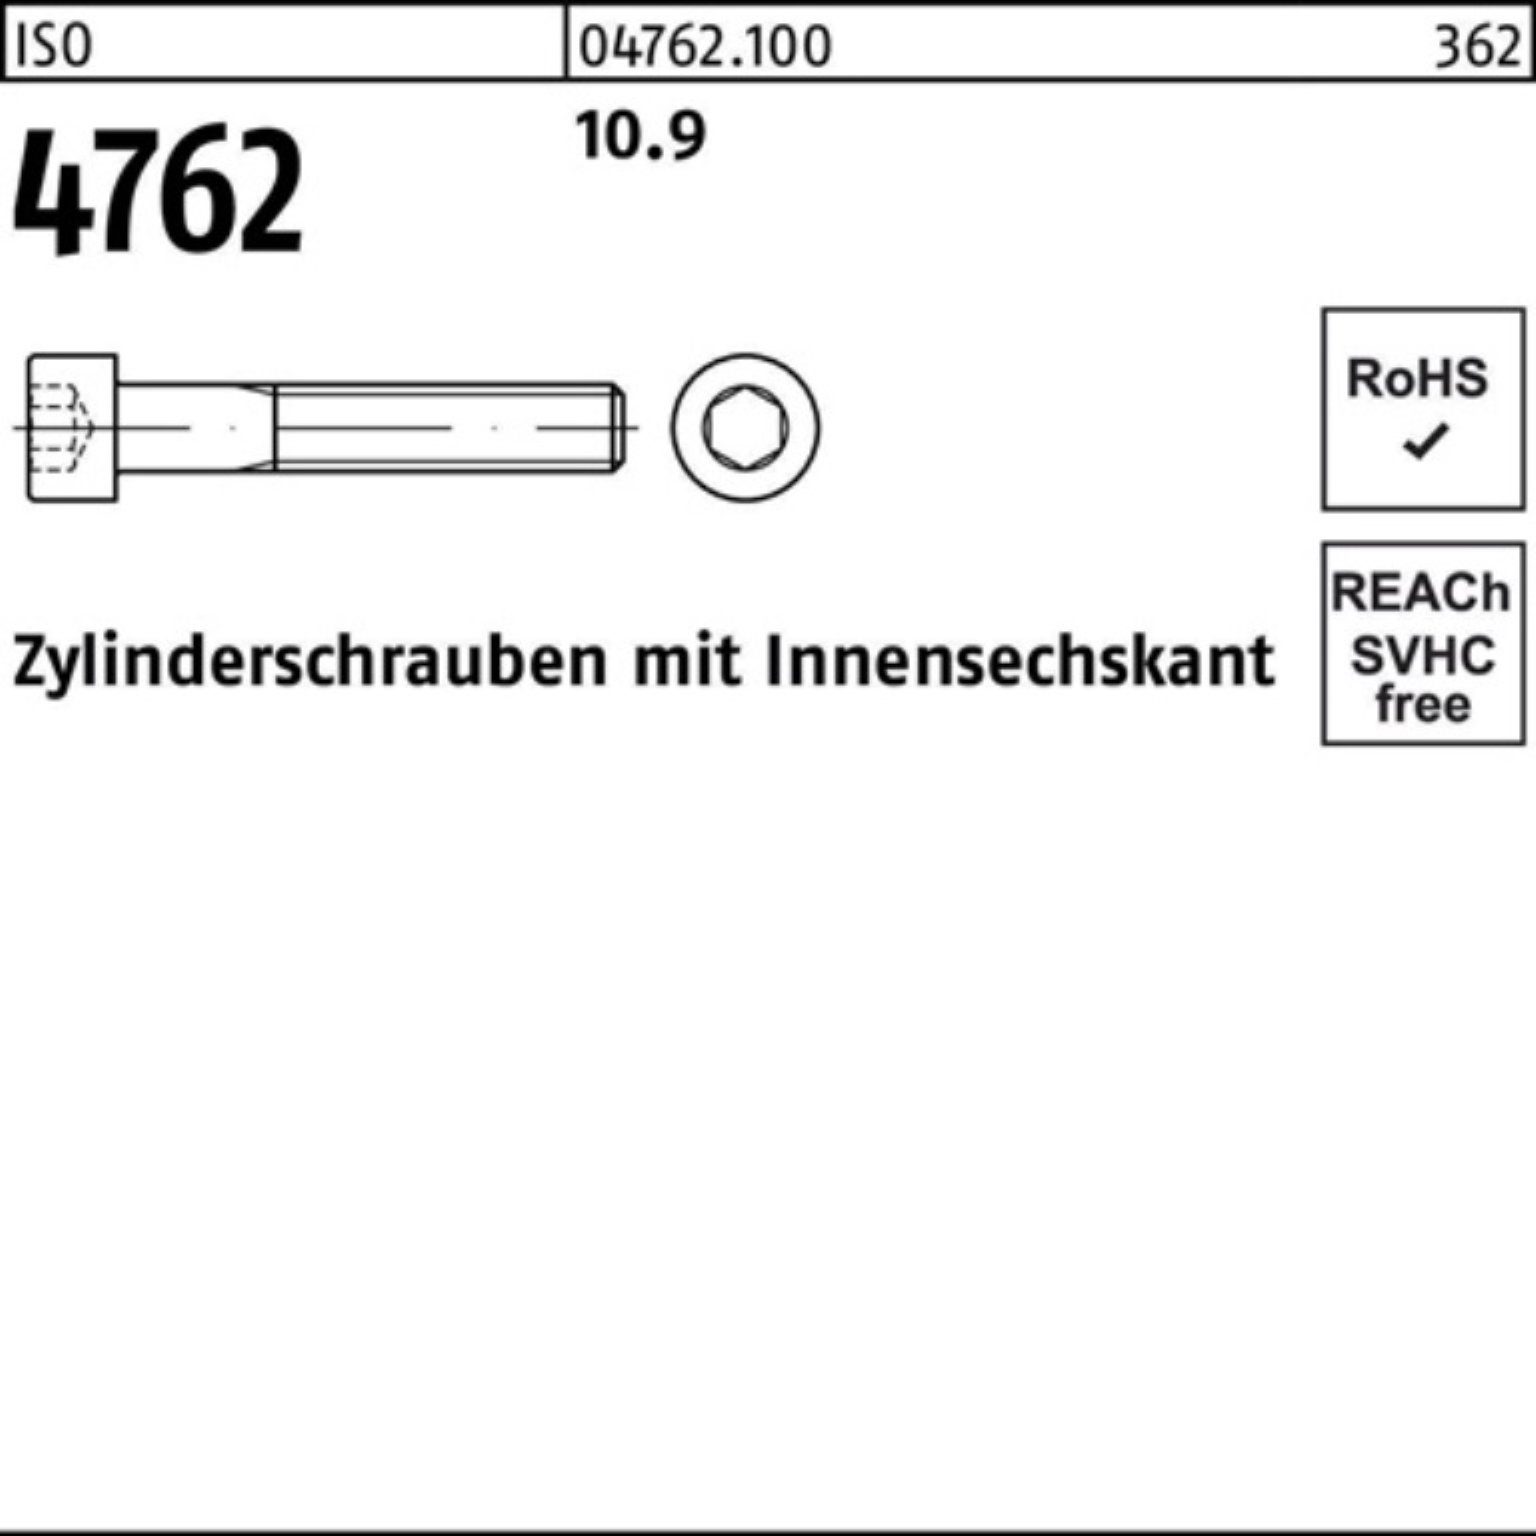 Zylinderschraube 320 100er Zylinderschraube M27x Reyher 4762 Stück 1 Innen-6kt Pack 10.9 ISO